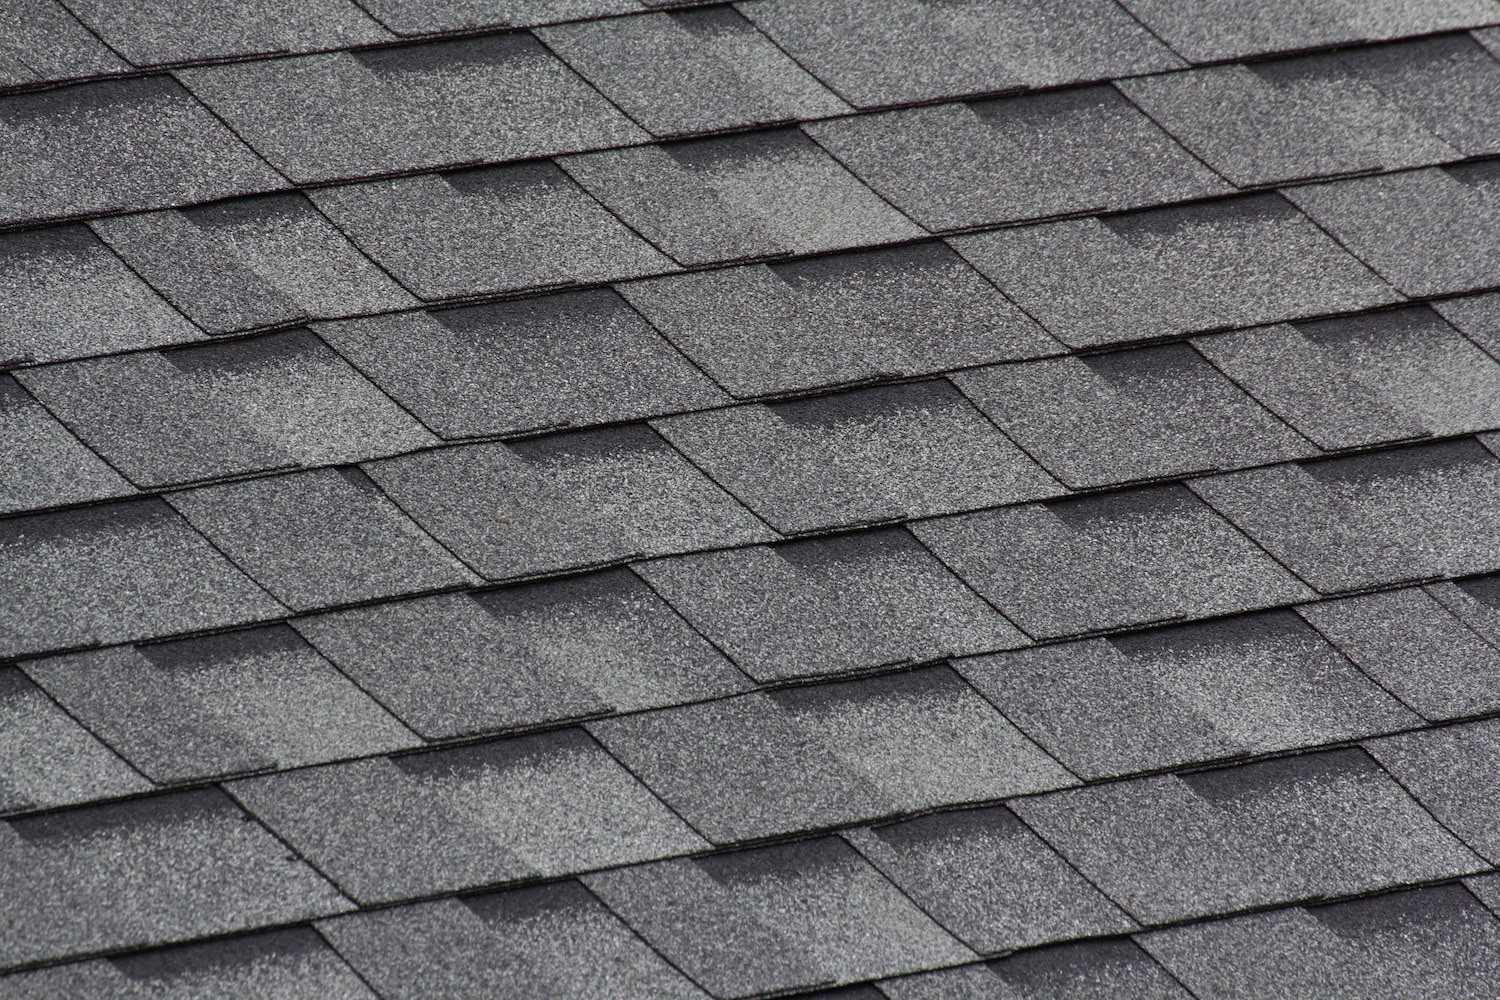 thornton roofing asphalt shingles